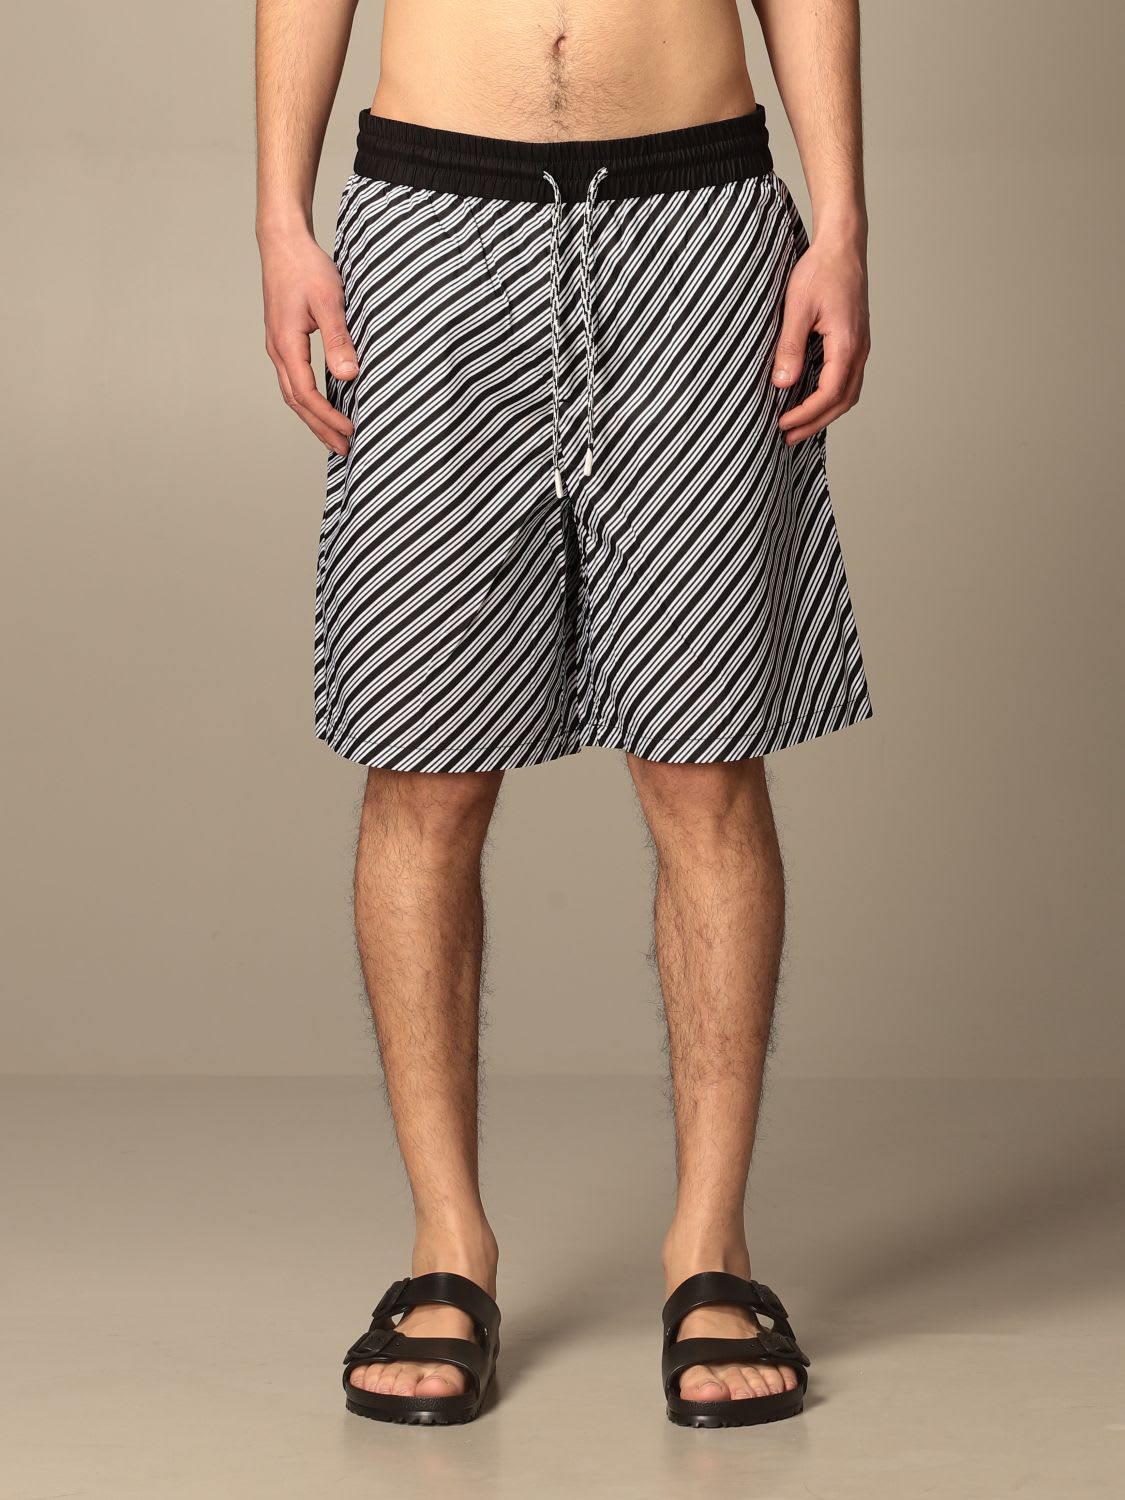 Emporio Armani Short Emporio Armani Bermuda Shorts In Diagonal Striped Cotton